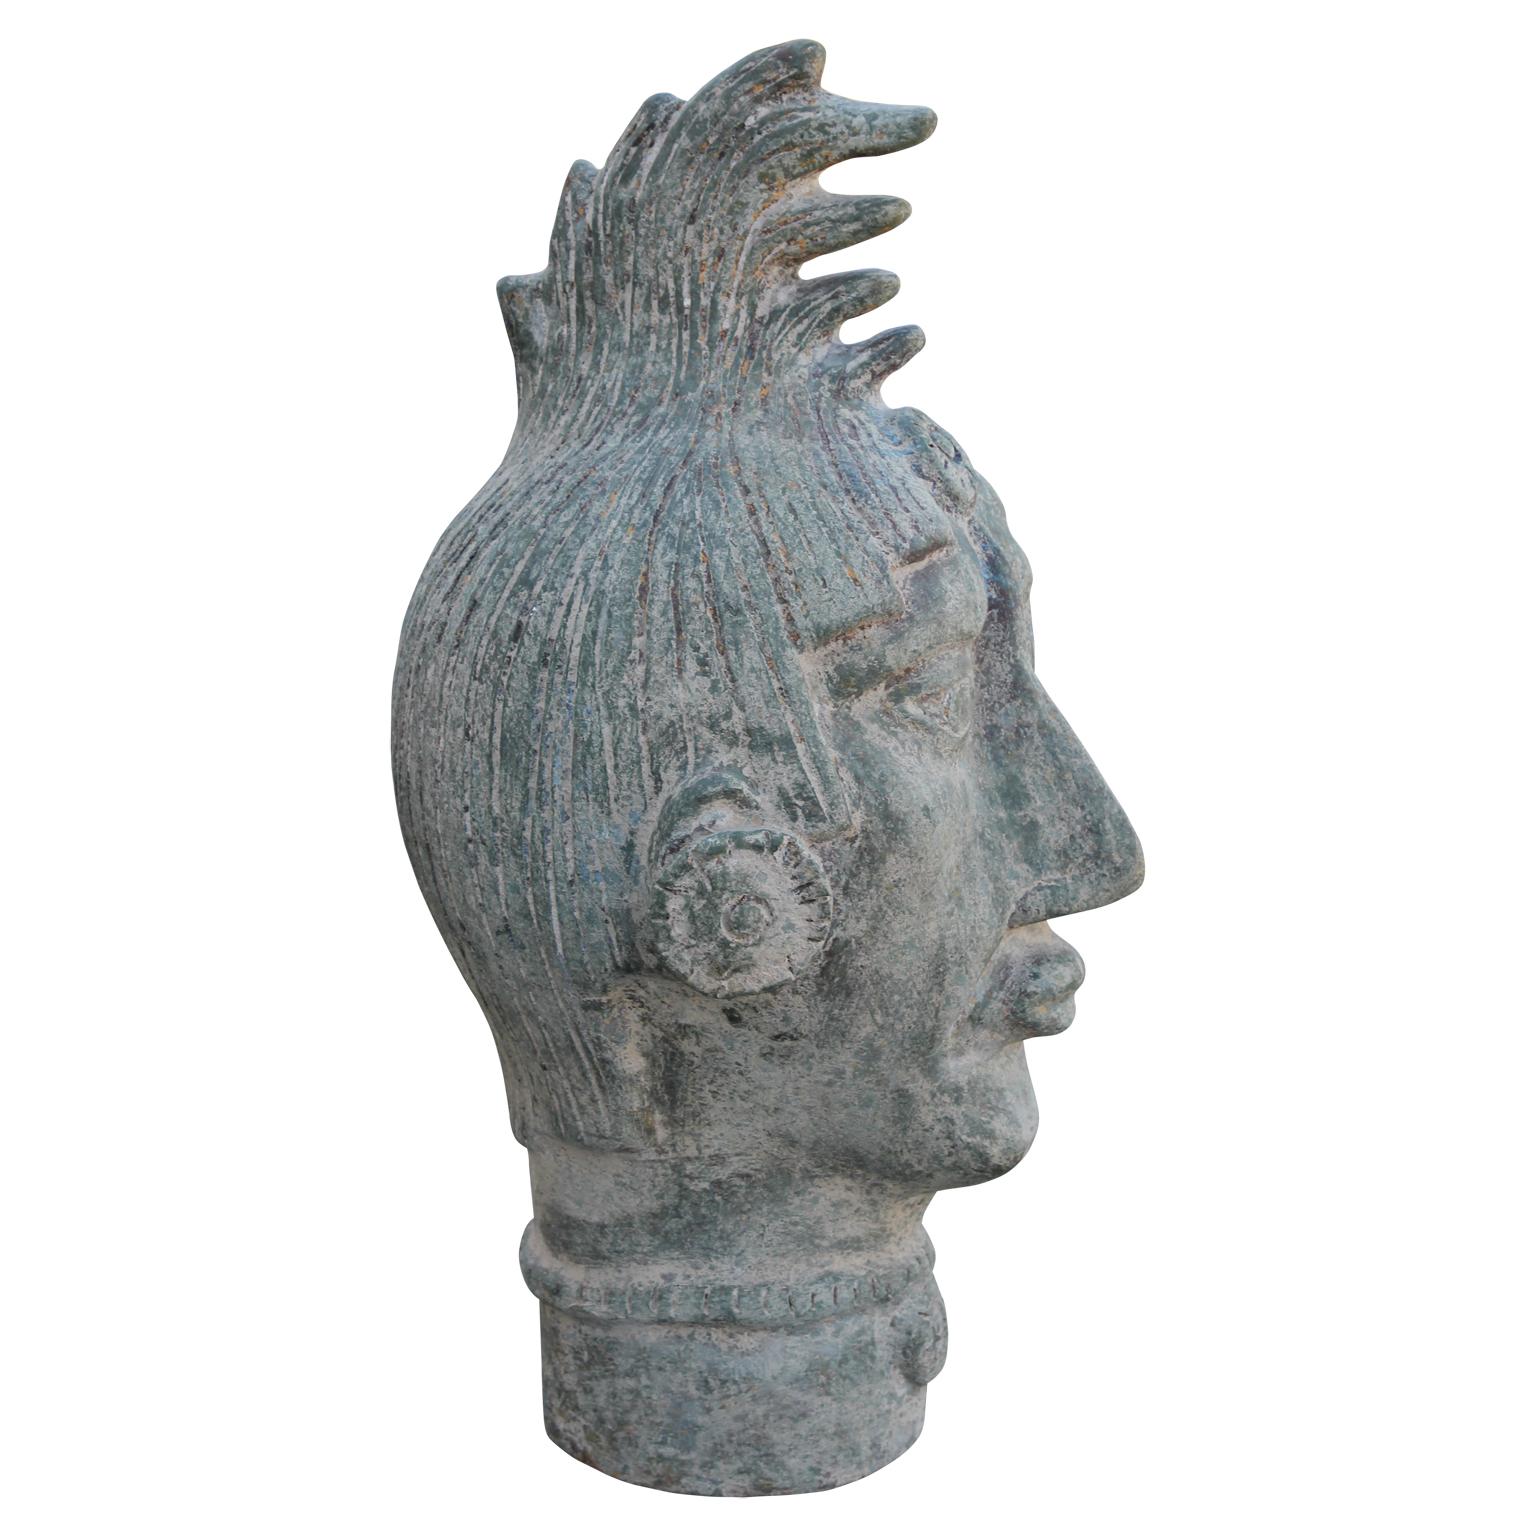 Paire monumentale de têtes sculpturales décoratives mayas en terre cuite. Ils ont une belle finition qui imite l'aspect de la patine du bronze. 
